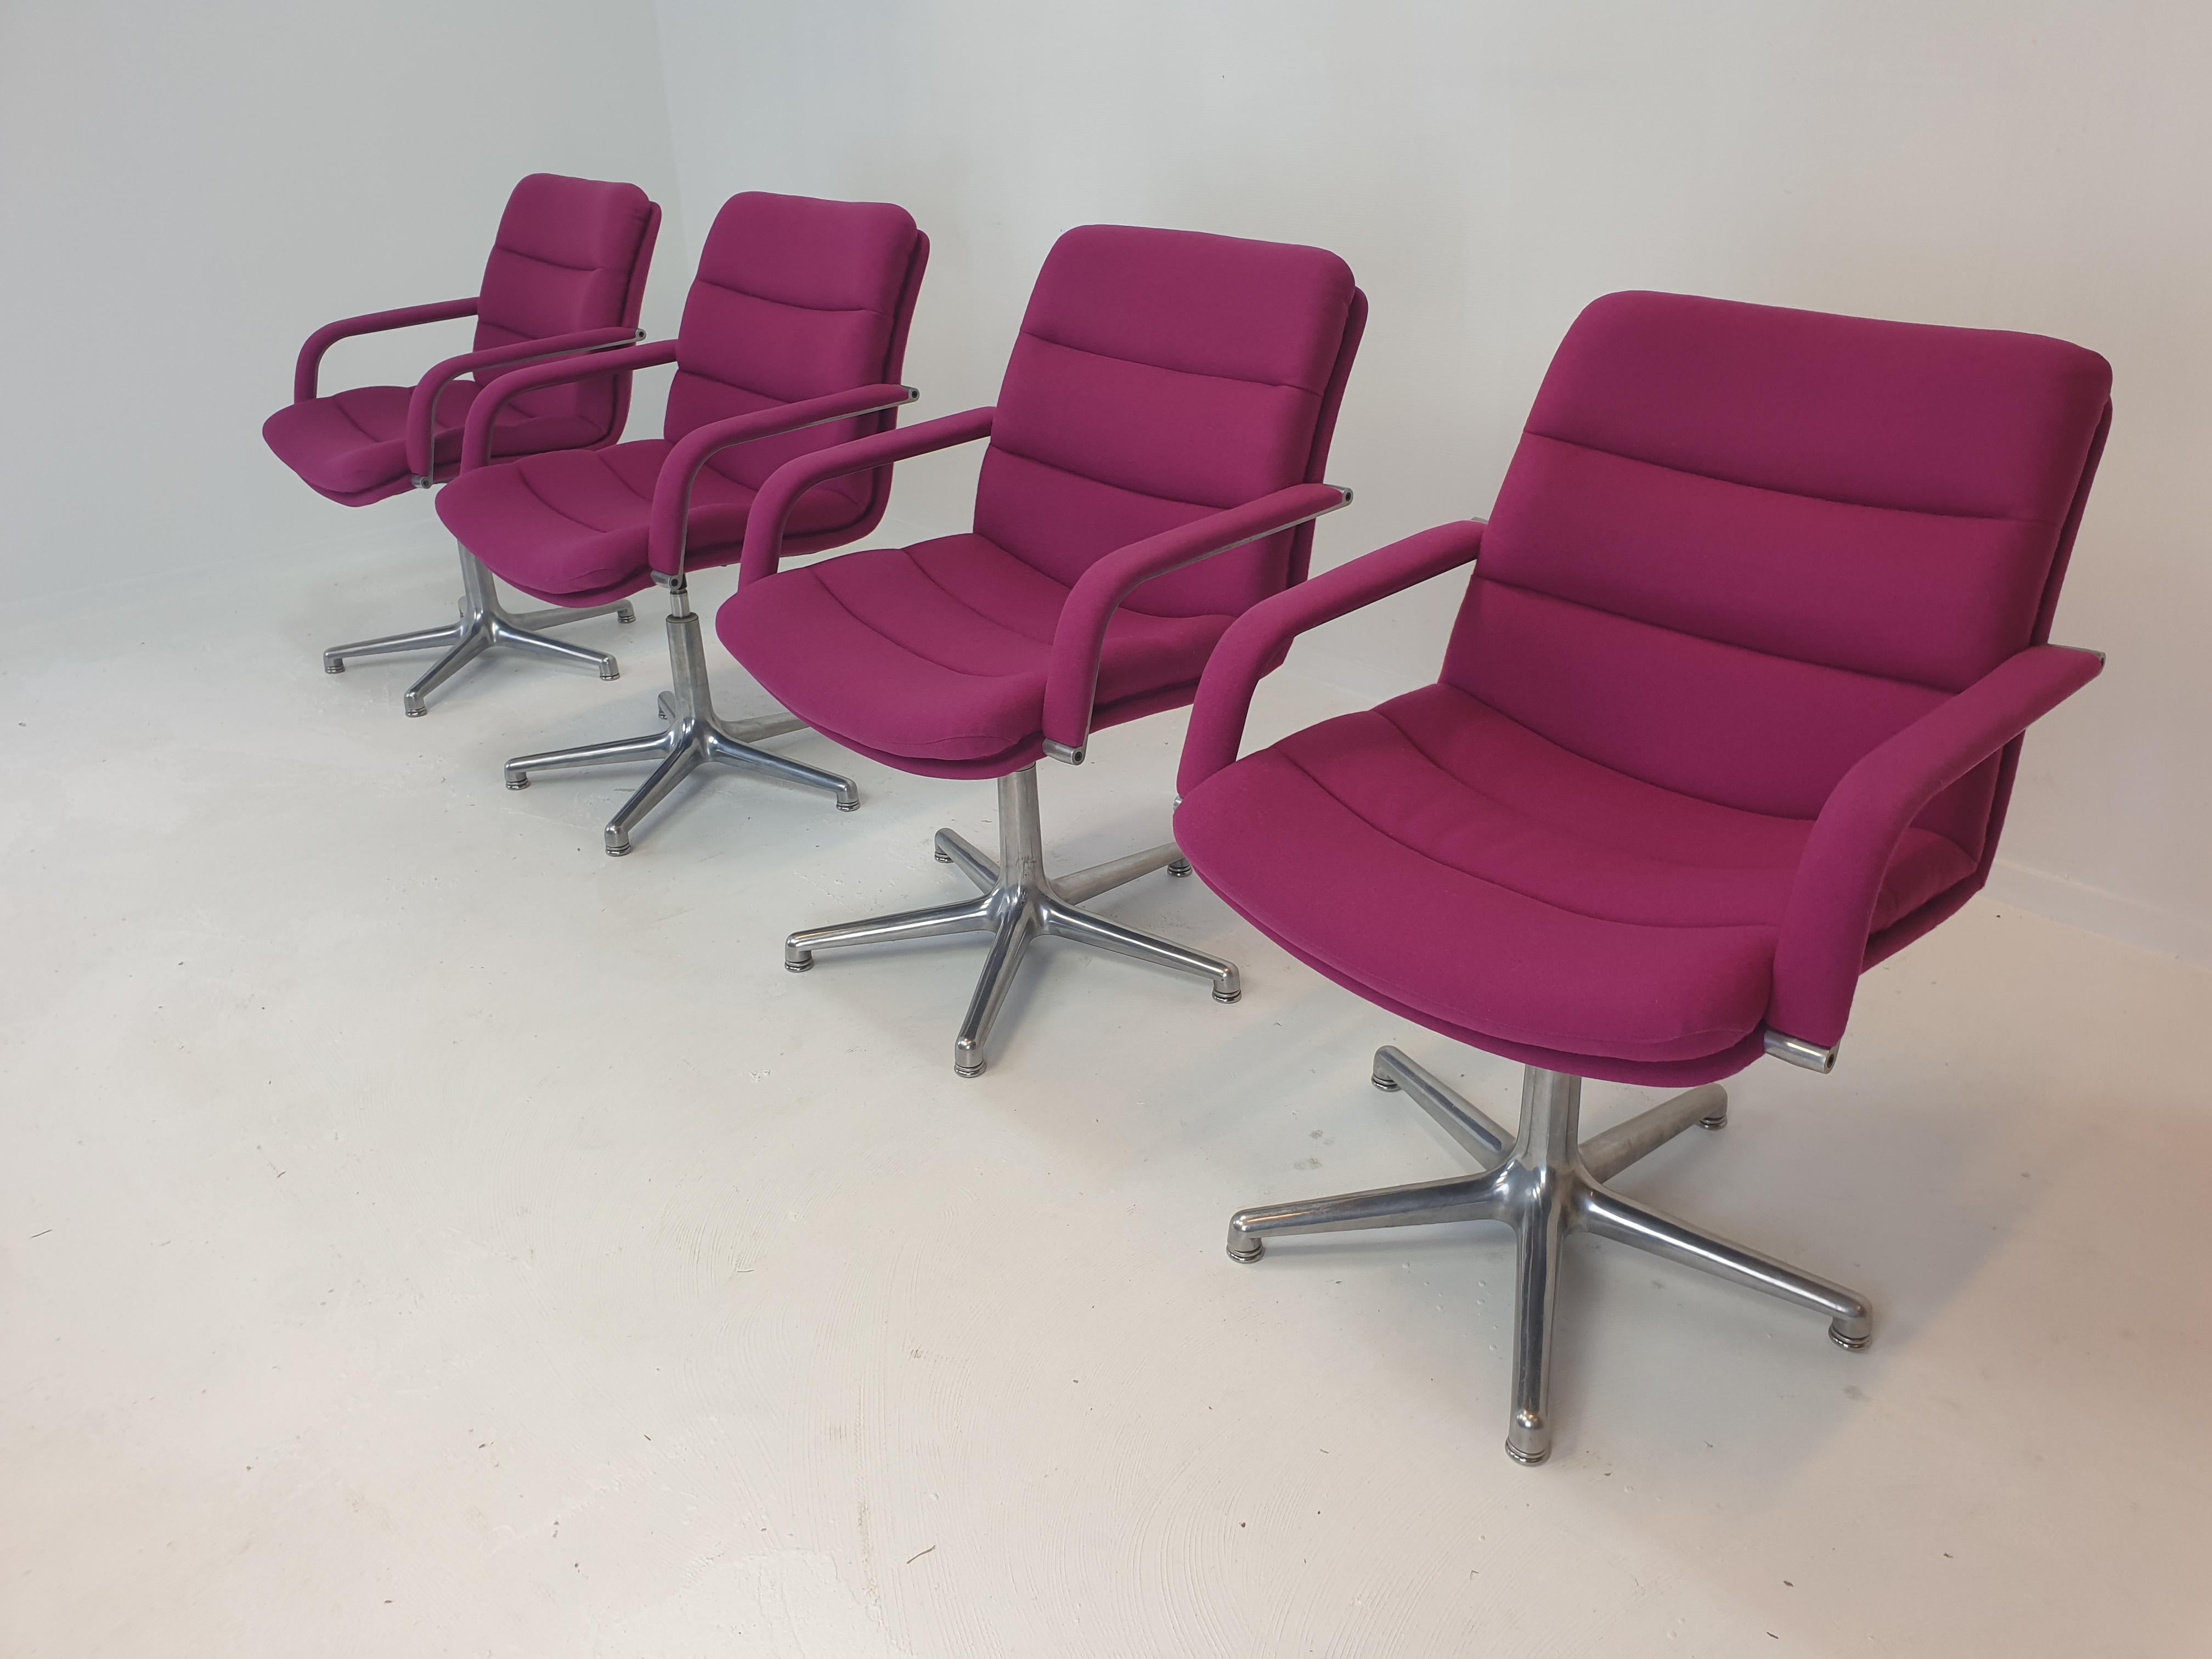 Très belle et confortable chaise de bureau conçue par Geoffrey Harcourt pour Artifort, Pays-Bas, années 1970.

Ces fauteuils pivotants sont fabriqués avec les meilleurs matériaux, ils ont une base solide à cinq pieds en aluminium. 
Le rembourrage en